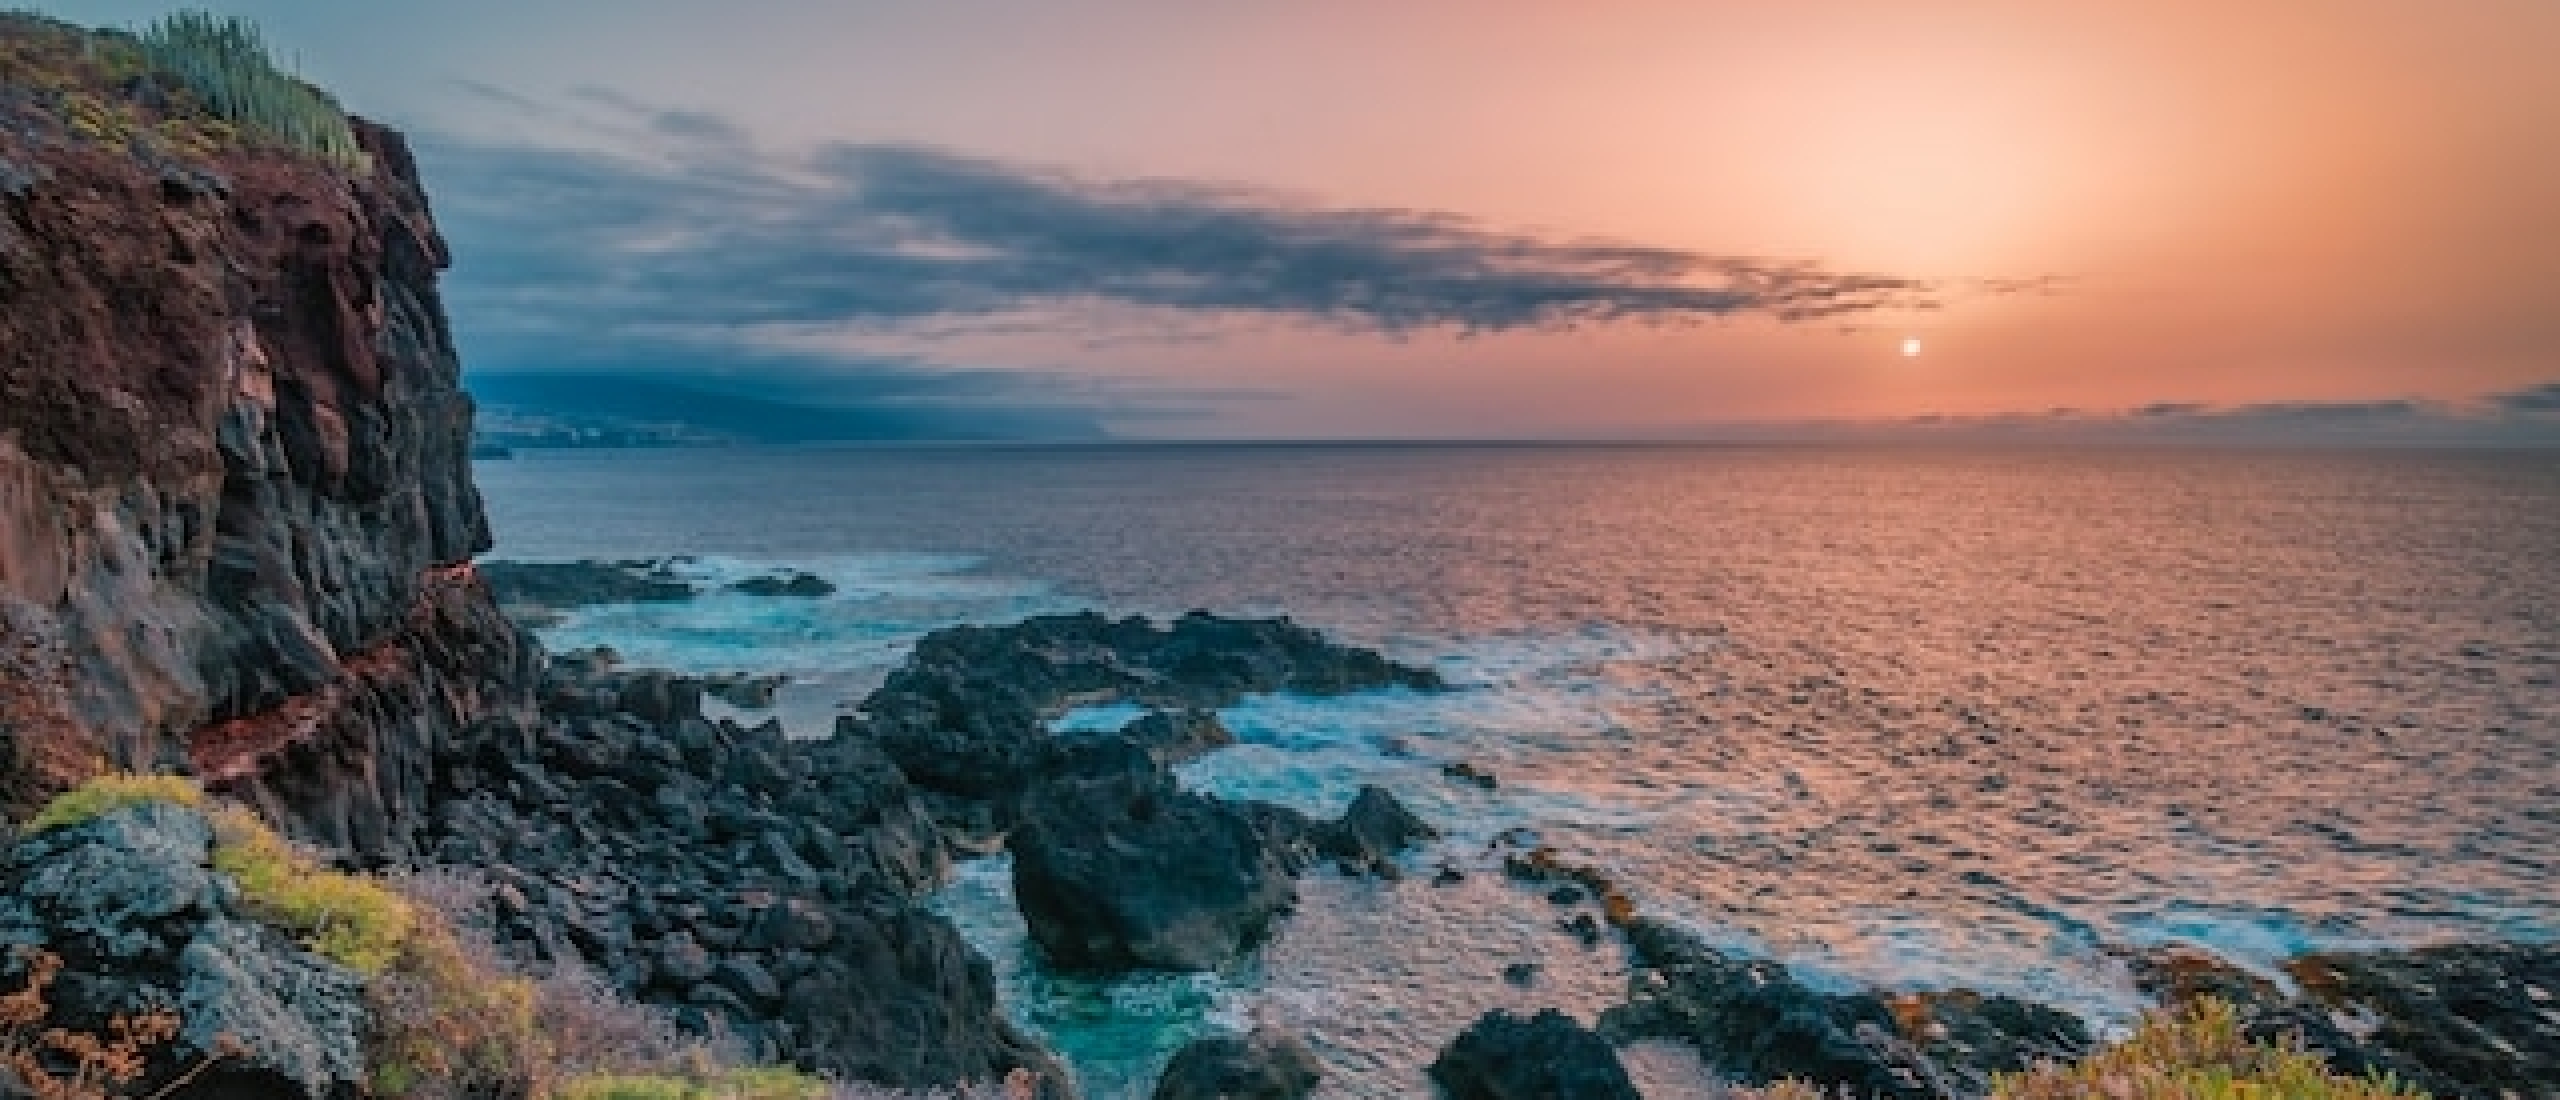 Wat is het mooiste Canarische Eiland?